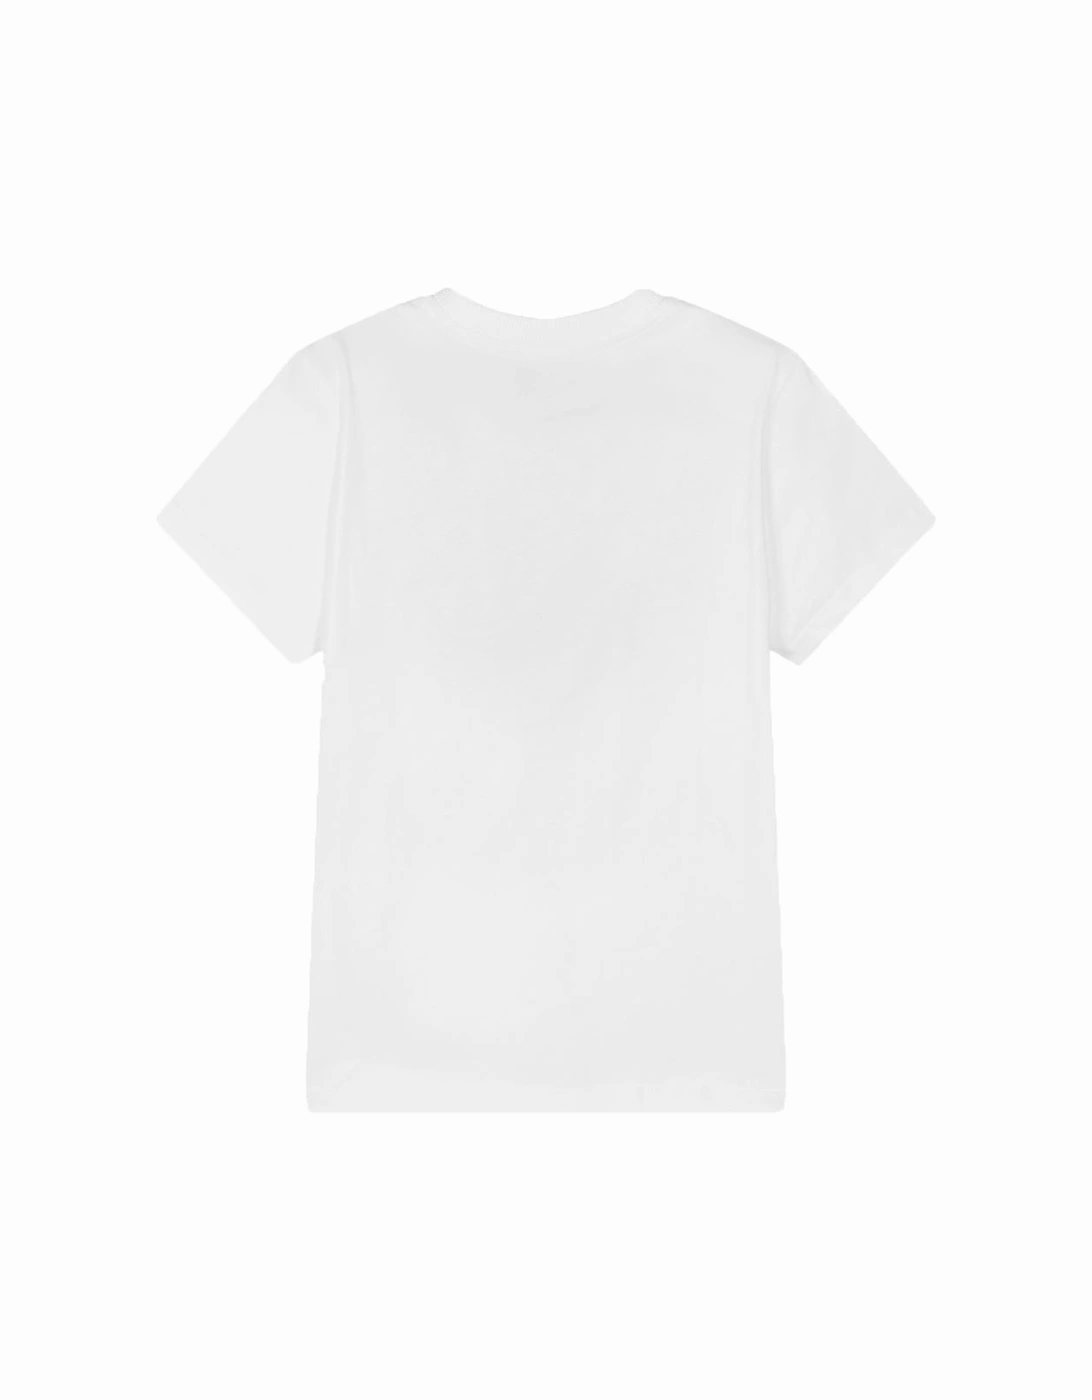 Unisex Kids Multi-Coloured Bear T-shirt White